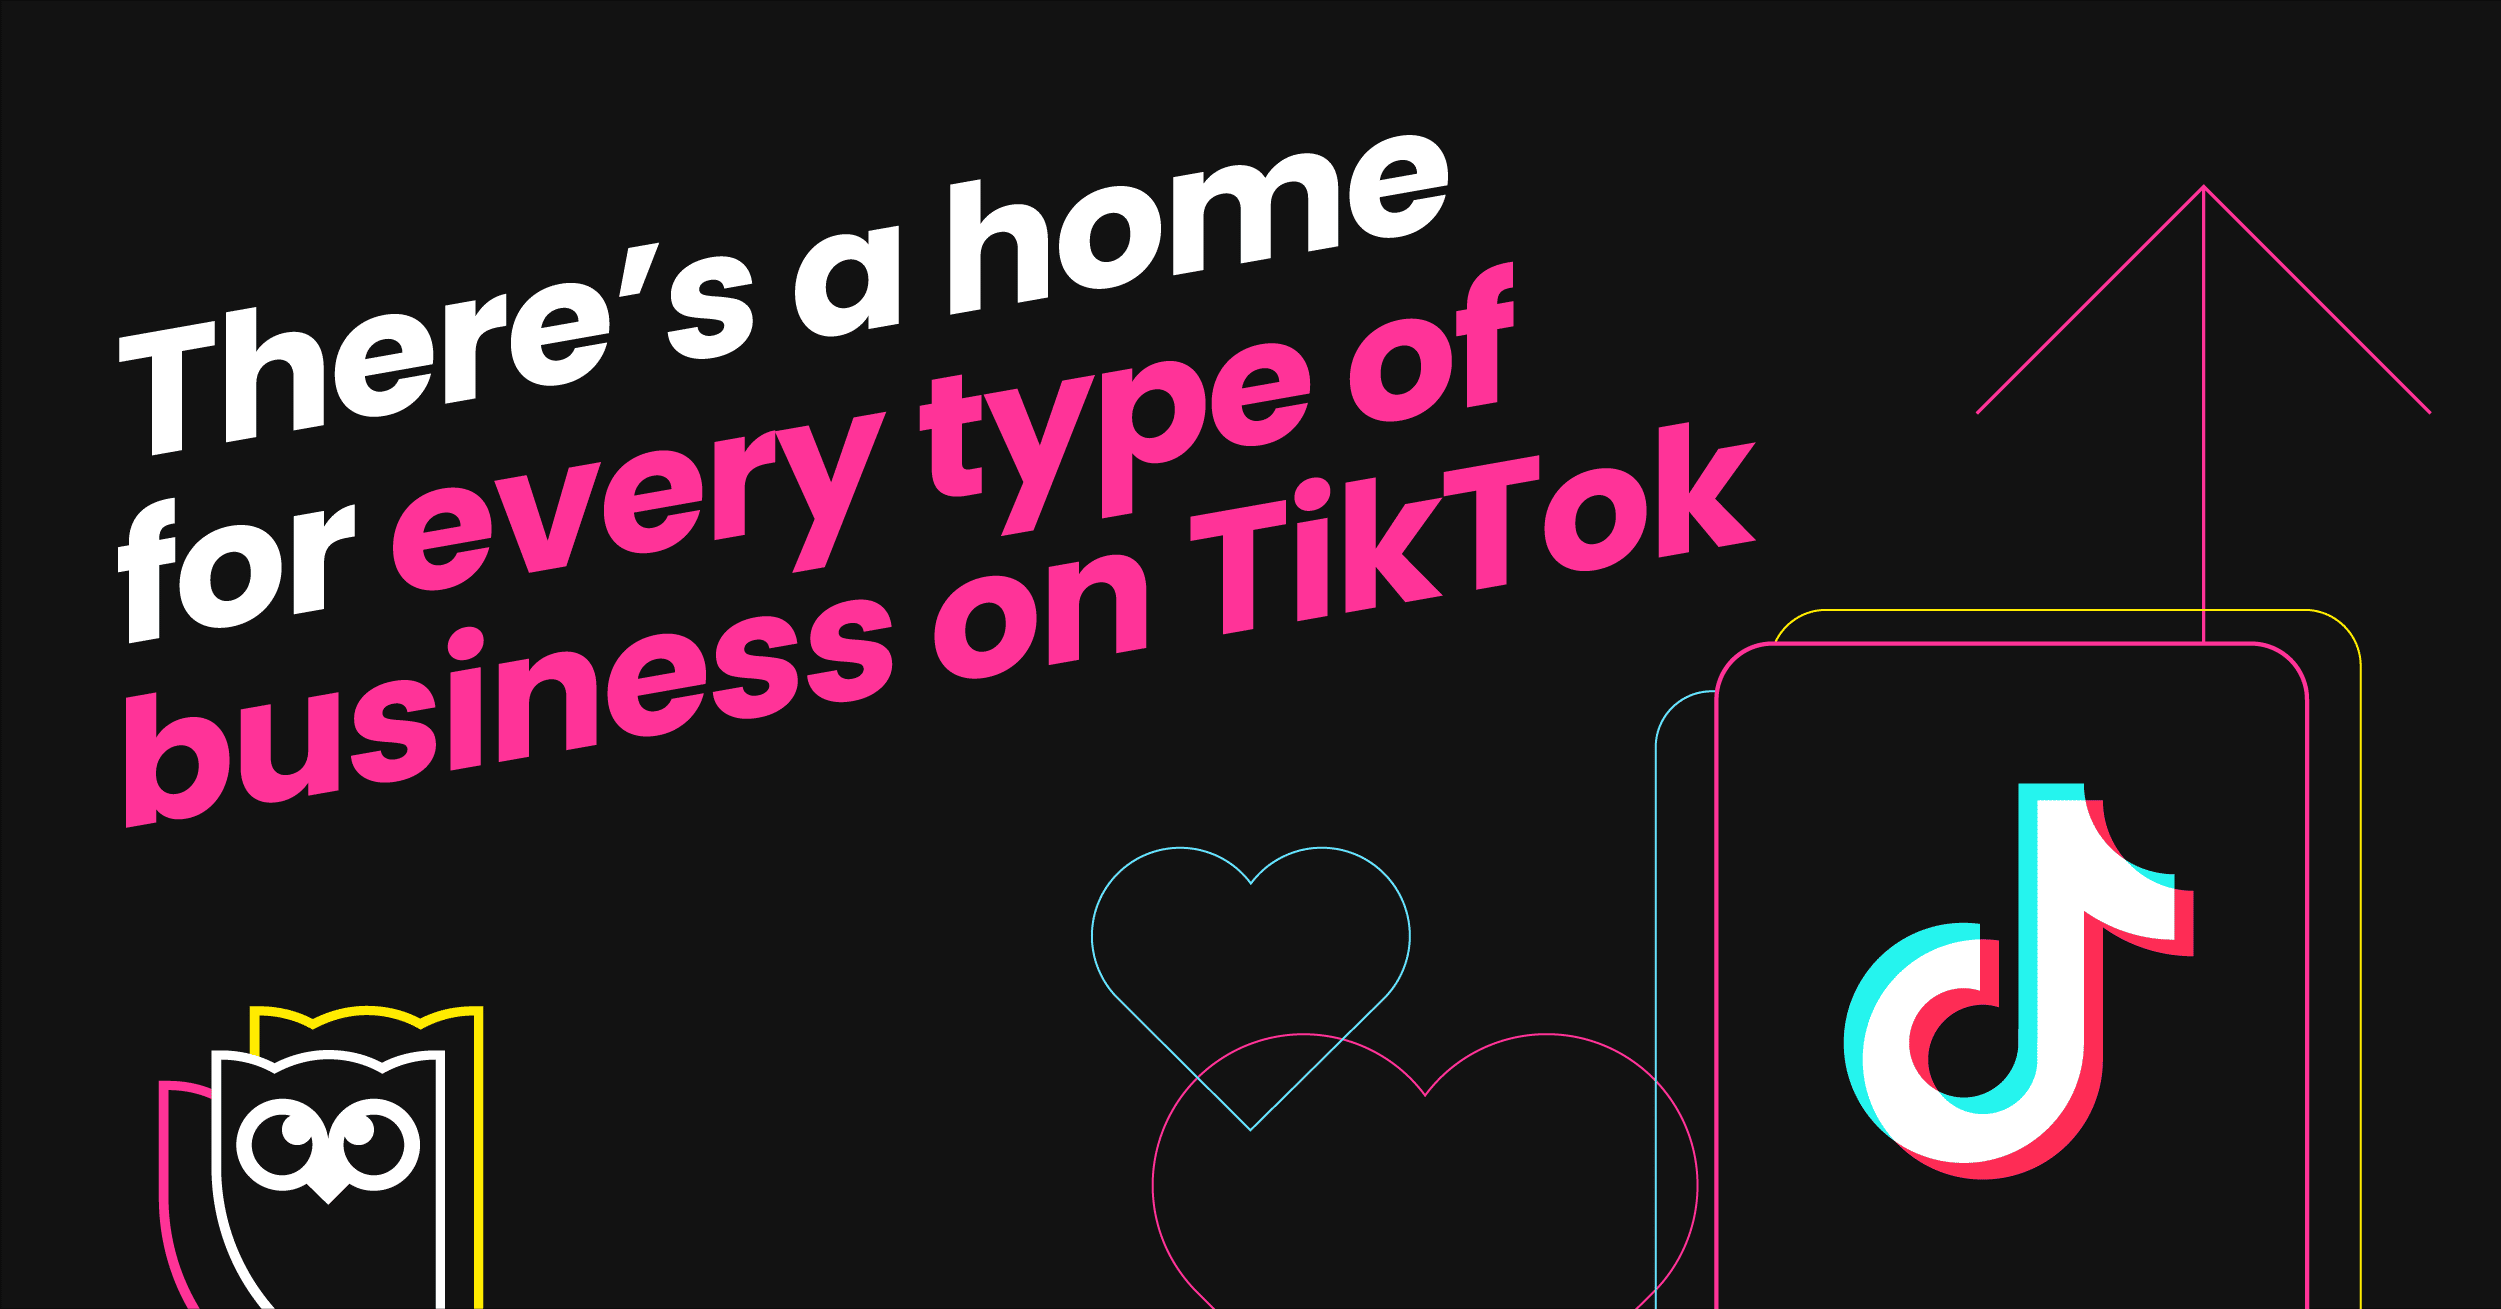 黑色背景上的白色和粉红色文字的图形阅读“ Tiktok上的每种业务都有一个房屋”